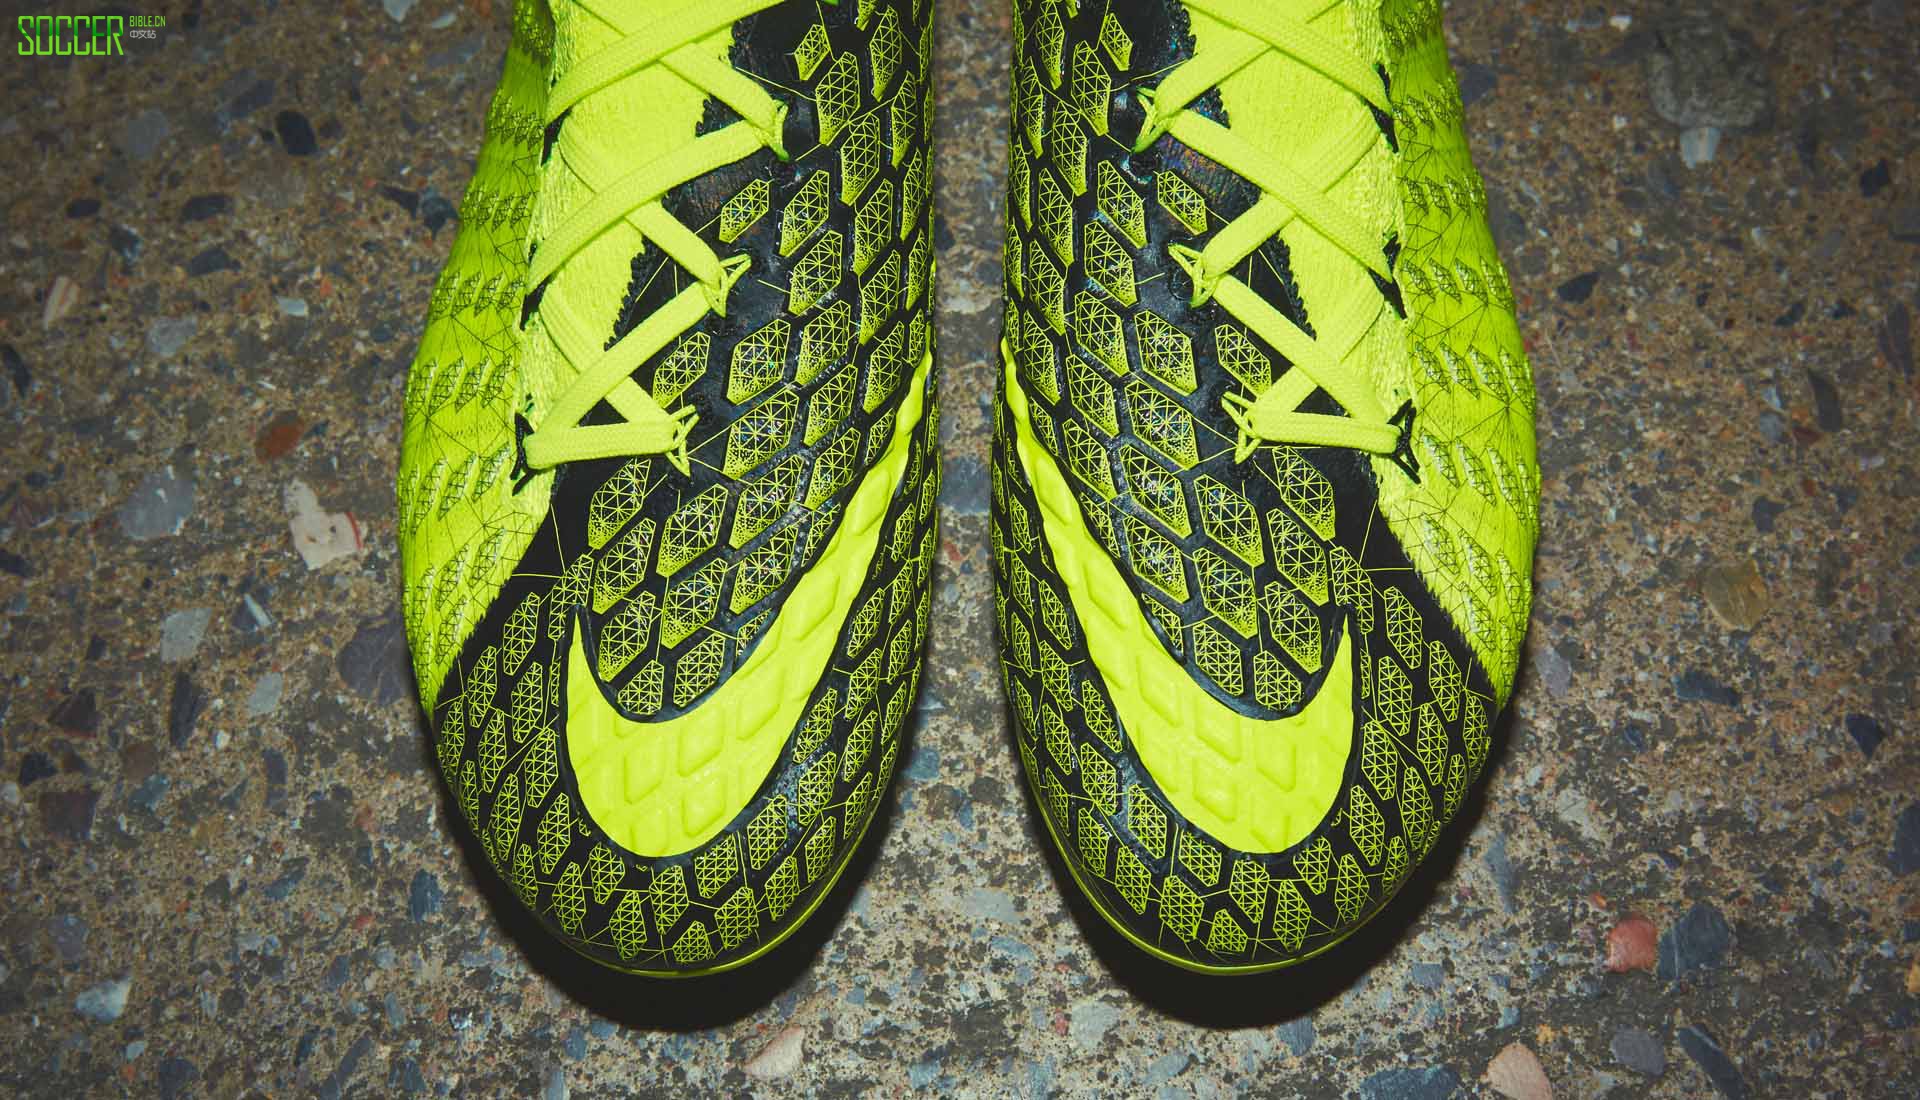 耐克推出限量版Mercurial Superfly VII - Nike_耐克足球鞋 - SoccerBible中文站_足球鞋_PDS情报站